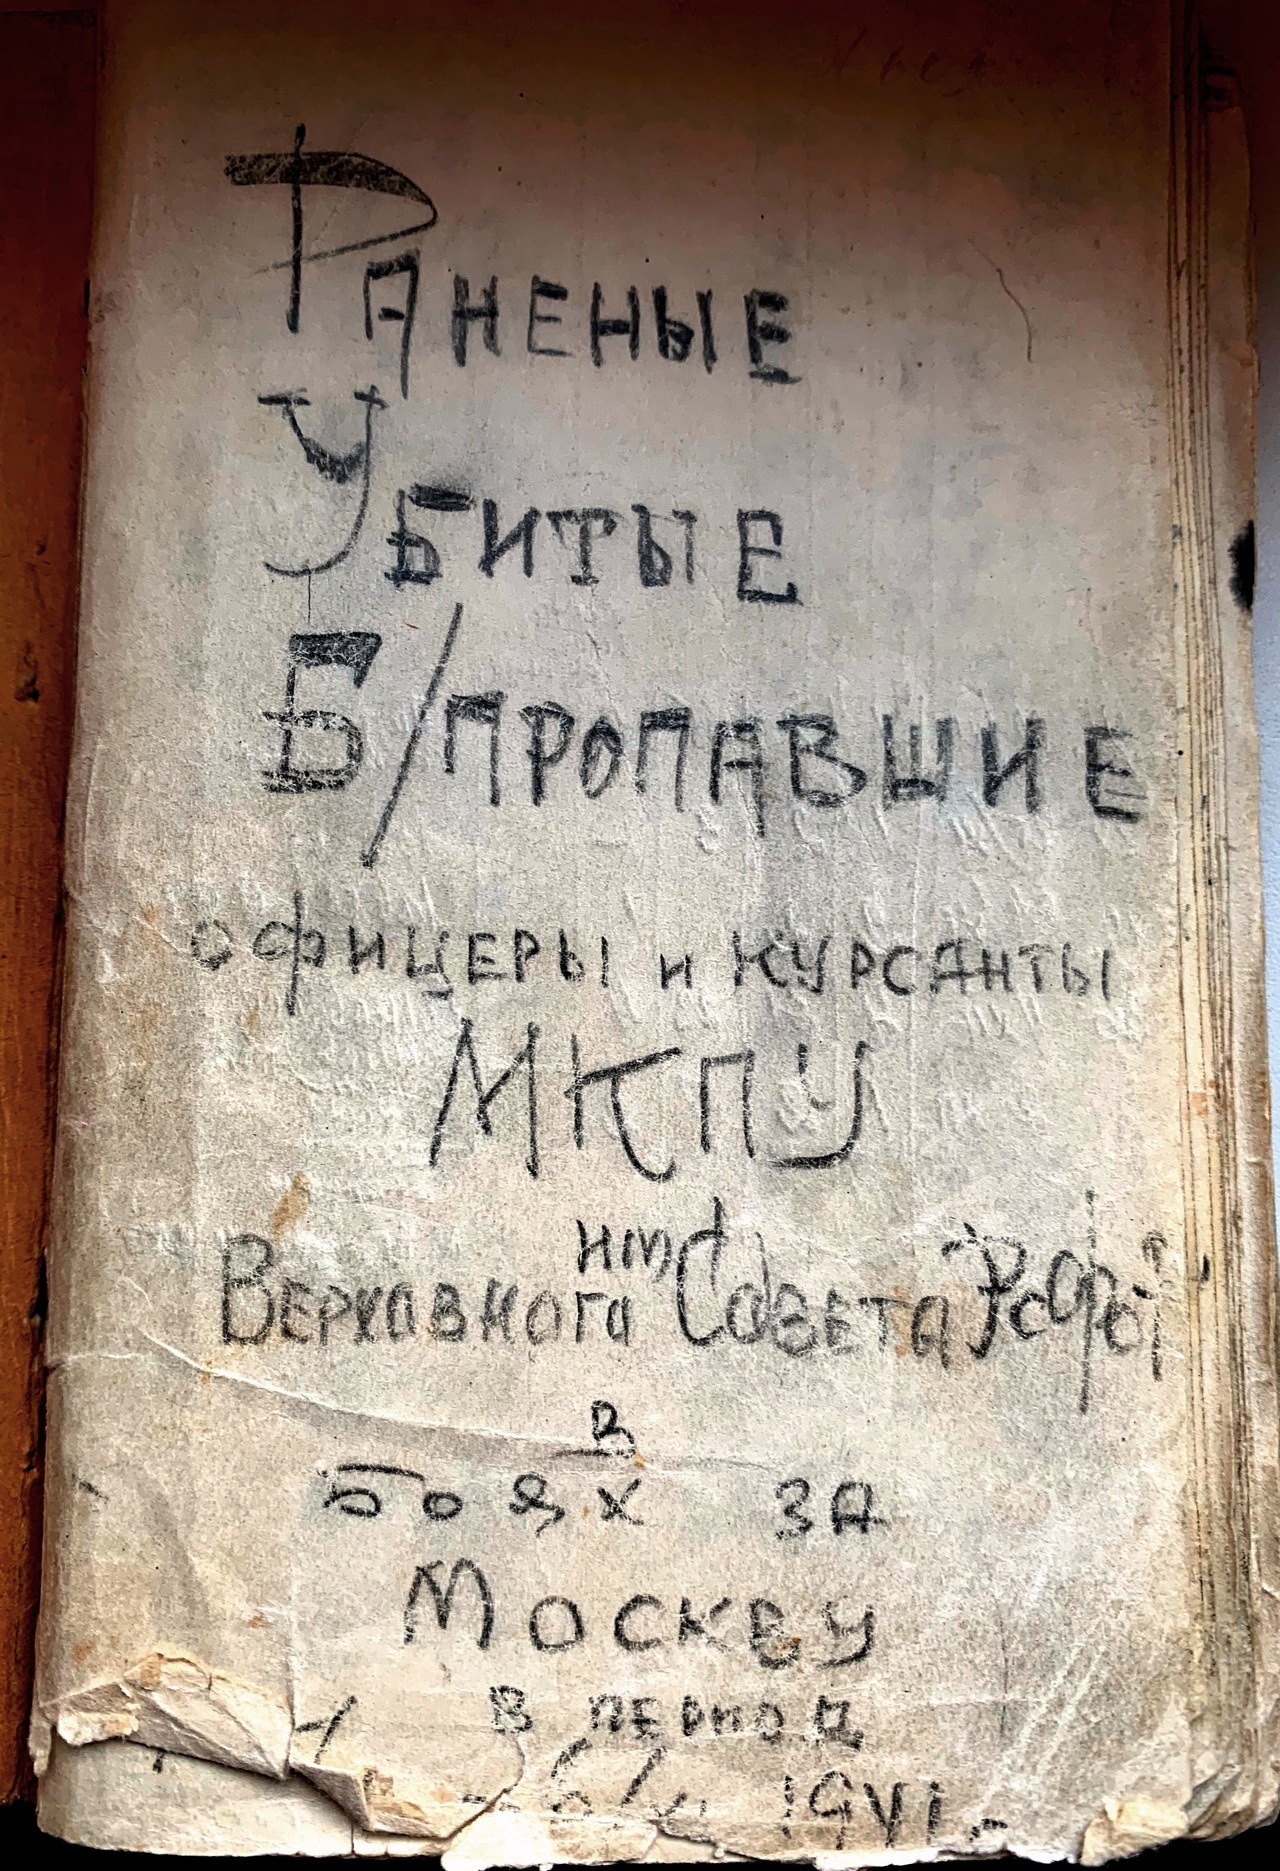 Обложка записной книжки о потерях курсантского полка МКПУ.